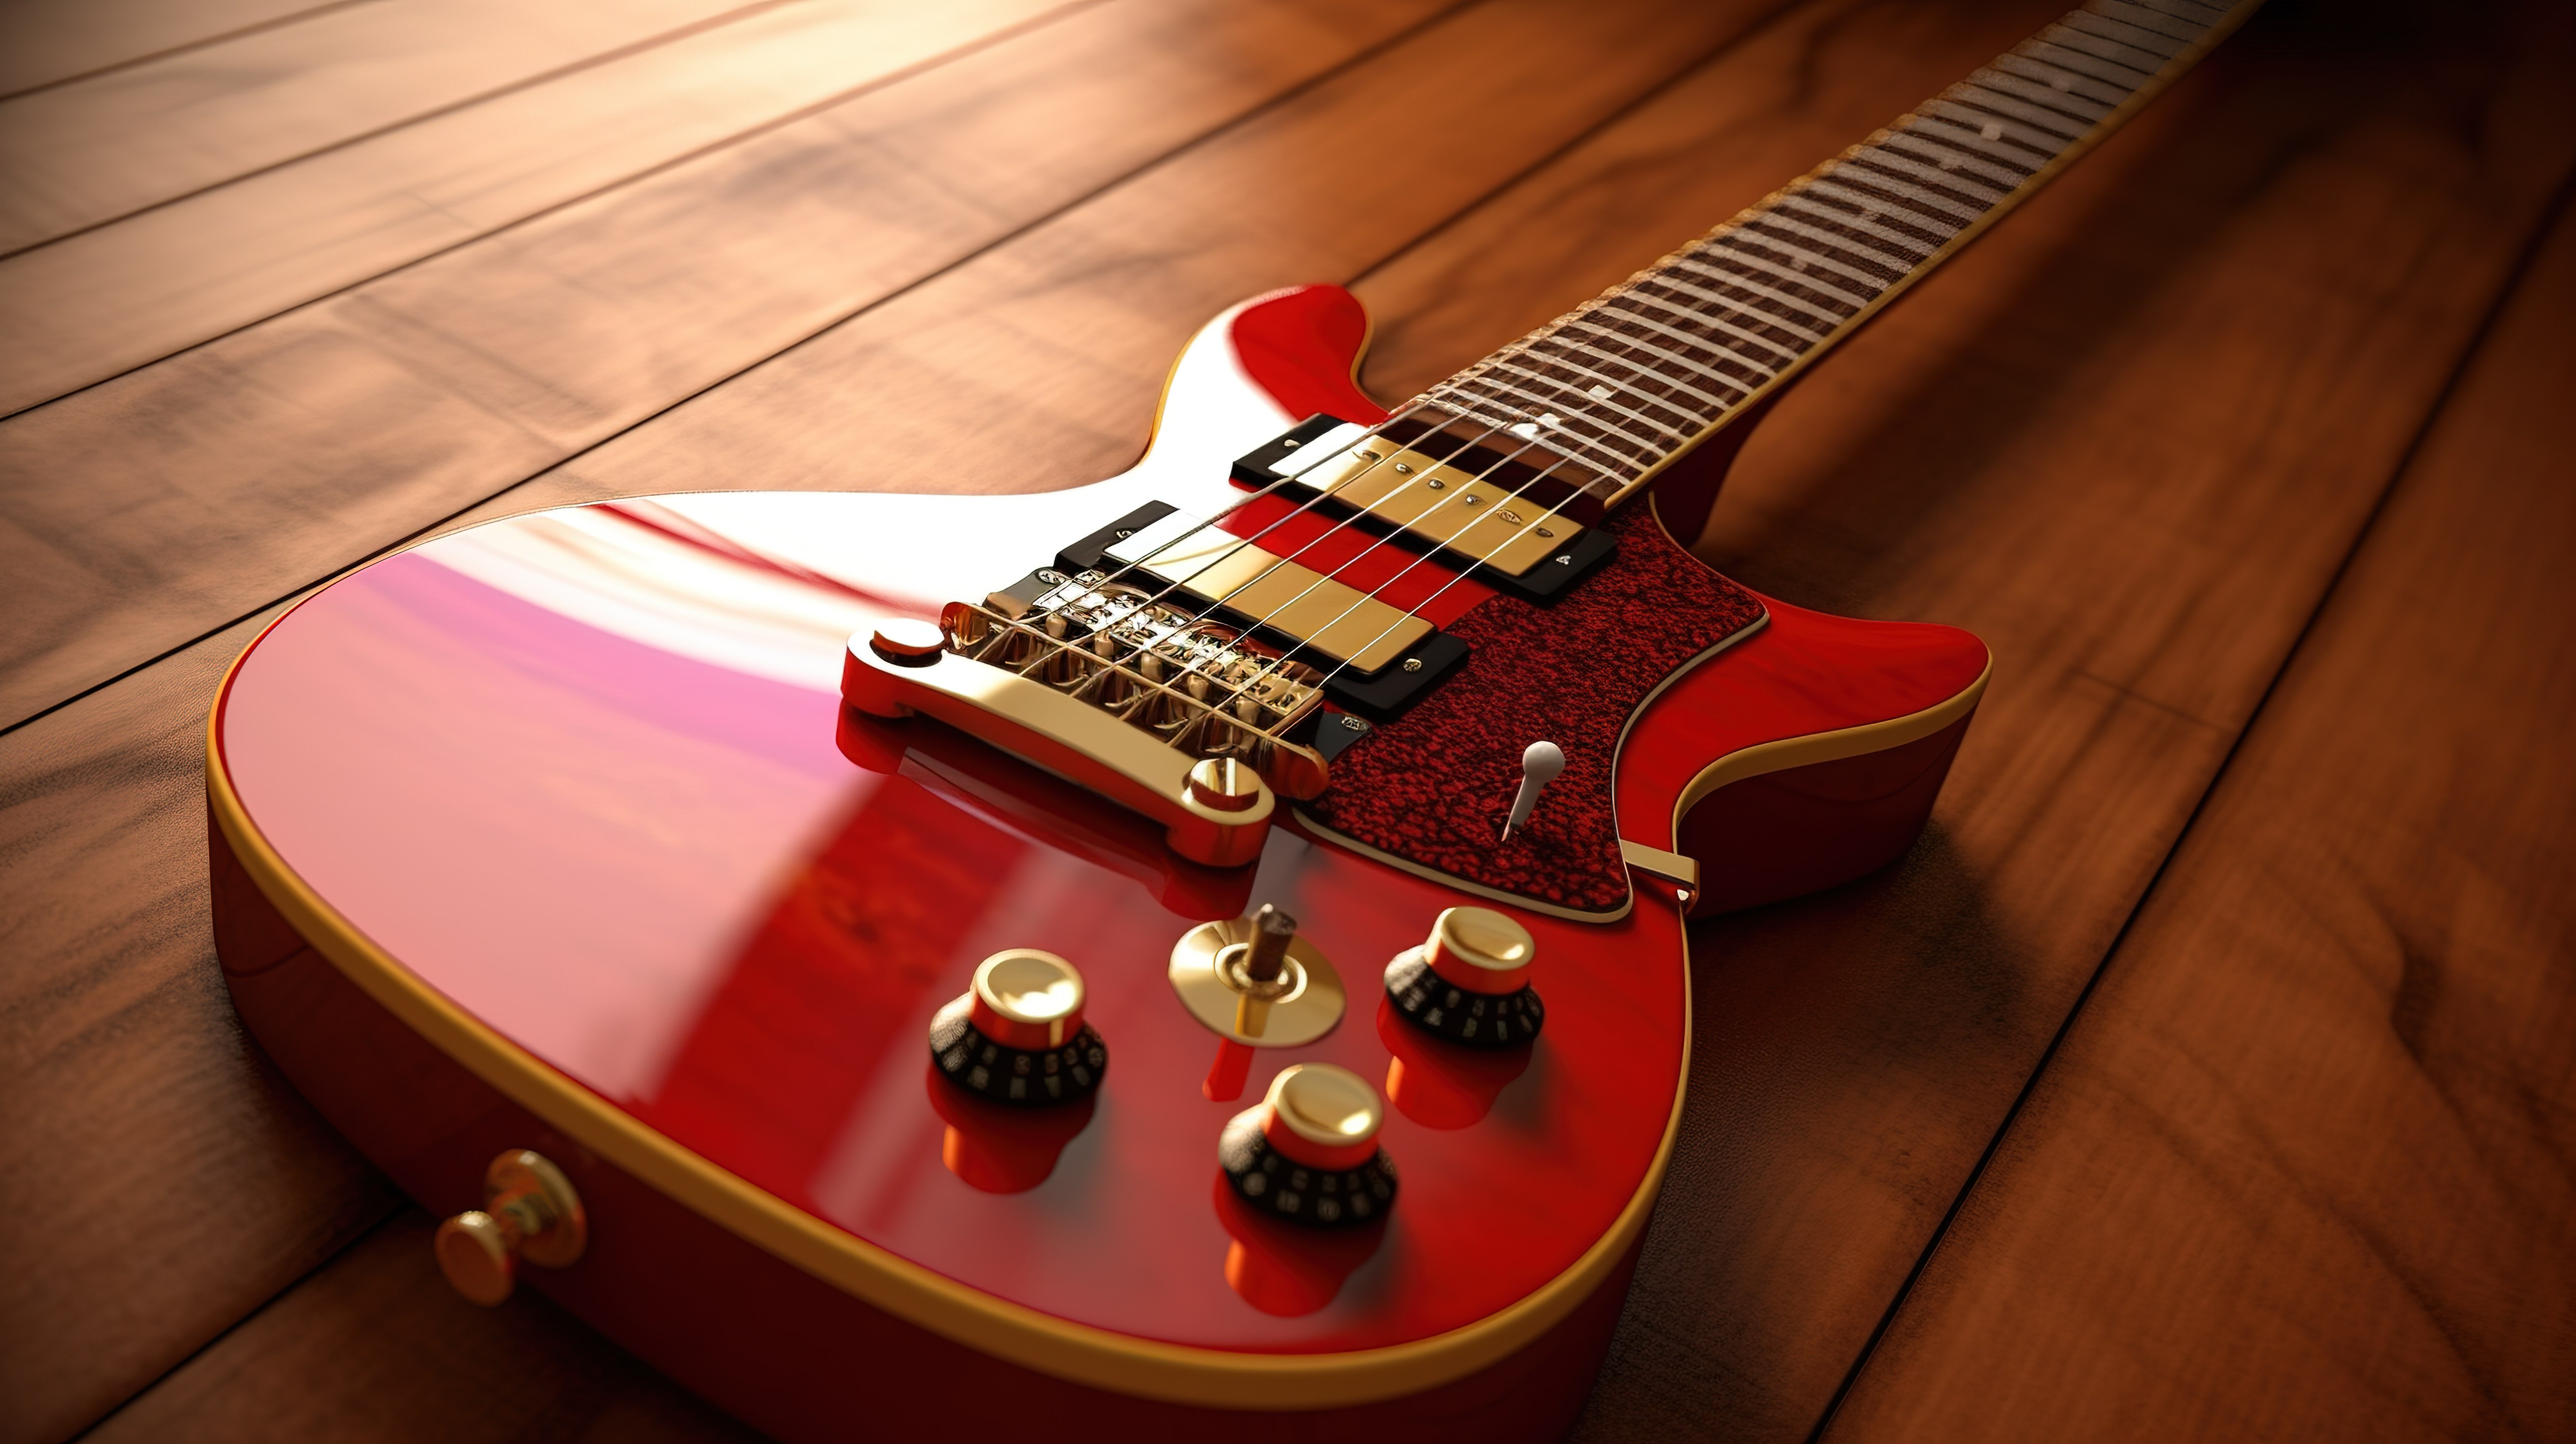 令人惊叹的复古风格红色电吉他通过 3D 渲染呈现在木桌上图片